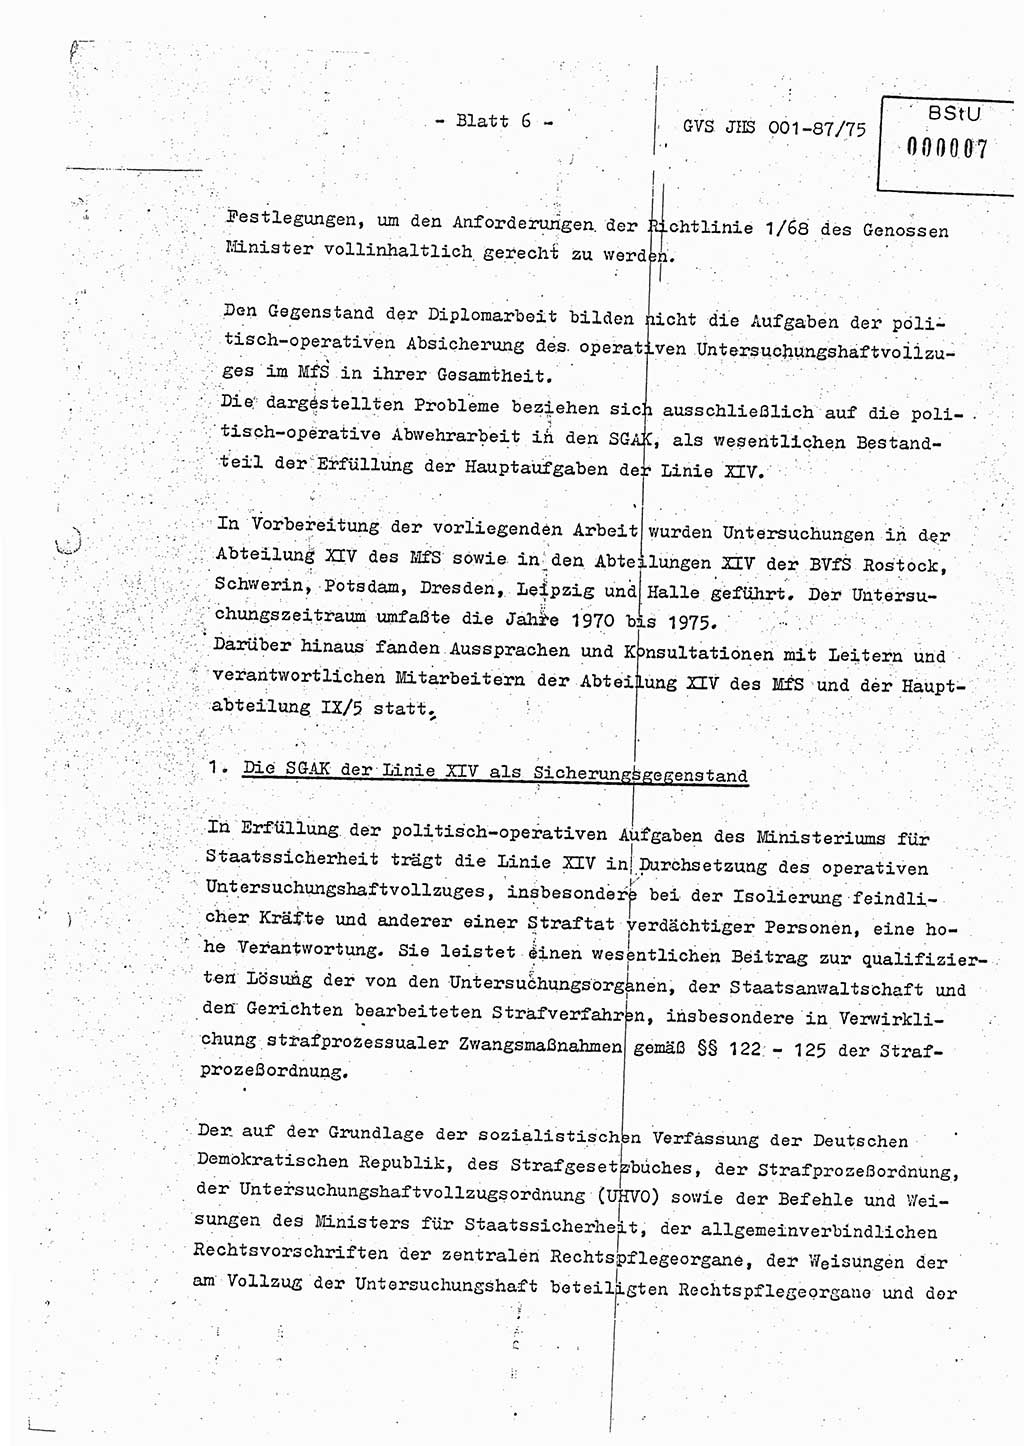 Diplomarbeit Hauptmann Volkmar Heinz (Abt. ⅩⅣ), Oberleutnant Lothar Rüdiger (BV Lpz. Abt. Ⅺ), Ministerium für Staatssicherheit (MfS) [Deutsche Demokratische Republik (DDR)], Juristische Hochschule (JHS), Geheime Verschlußsache (GVS) o001-87/75, Potsdam 1975, Seite 6 (Dipl.-Arb. MfS DDR JHS GVS o001-87/75 1975, S. 6)